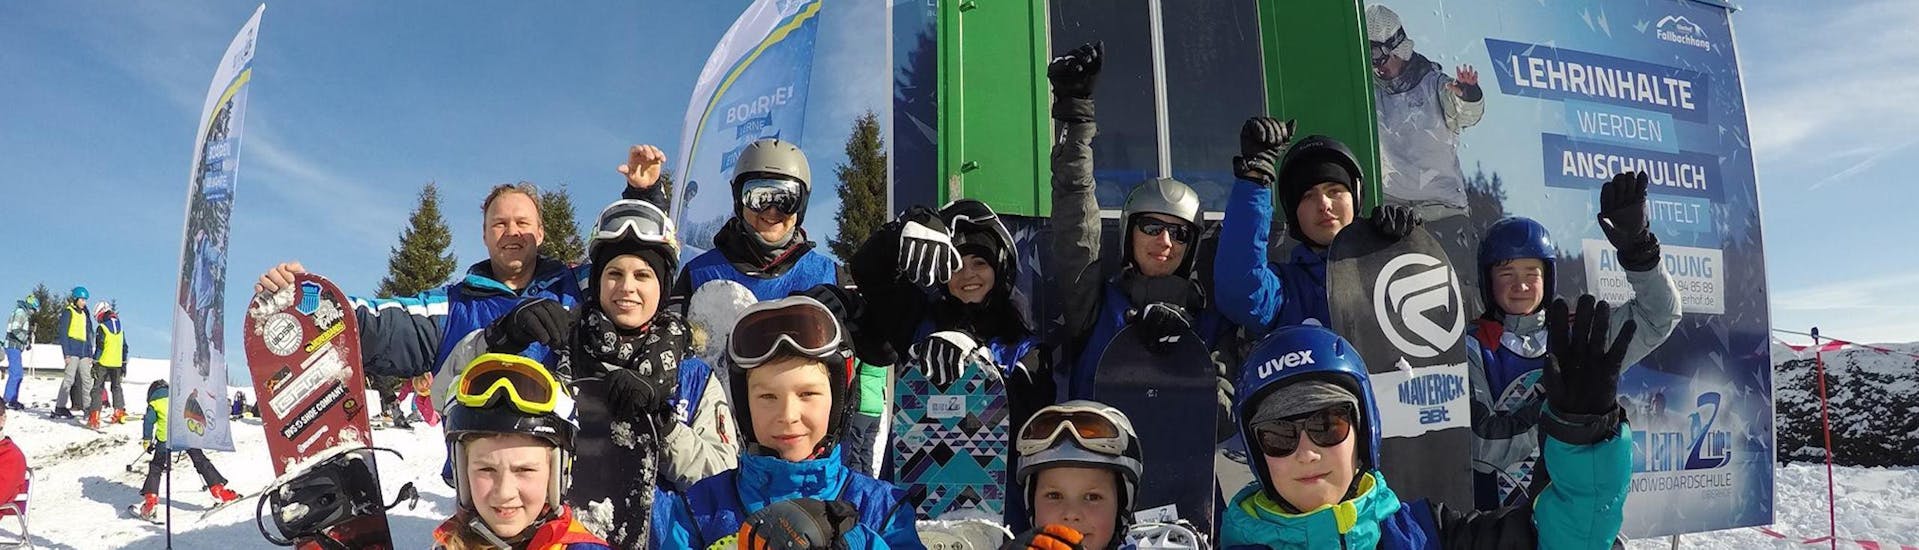 Snowboardkurs Kinder & Erwachsene für Leicht Fortgeschritten.